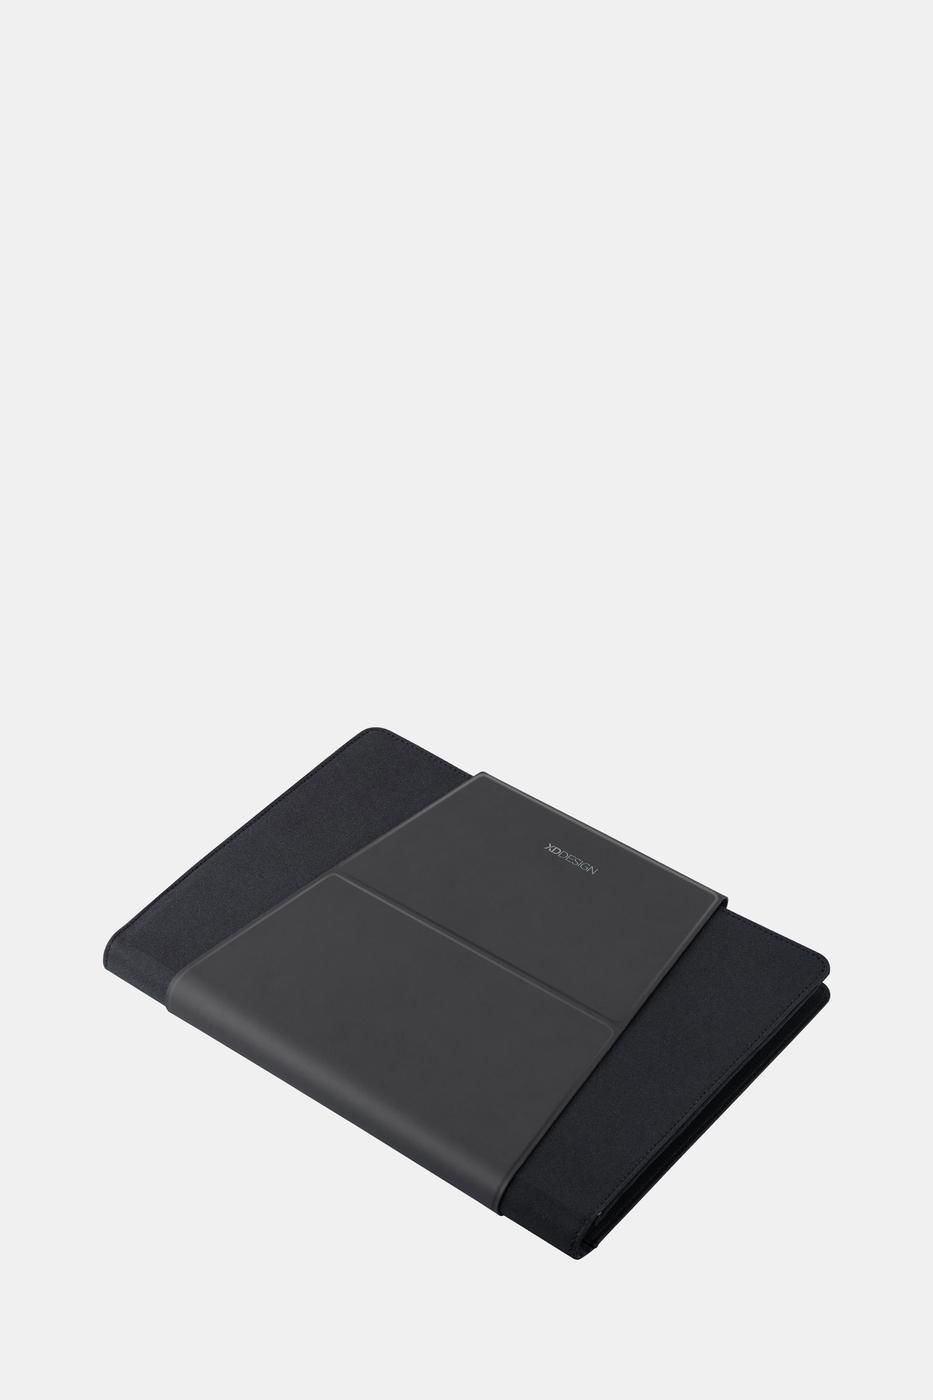 XD Design Mobile Office Laptop Çantası 13'' Siyah